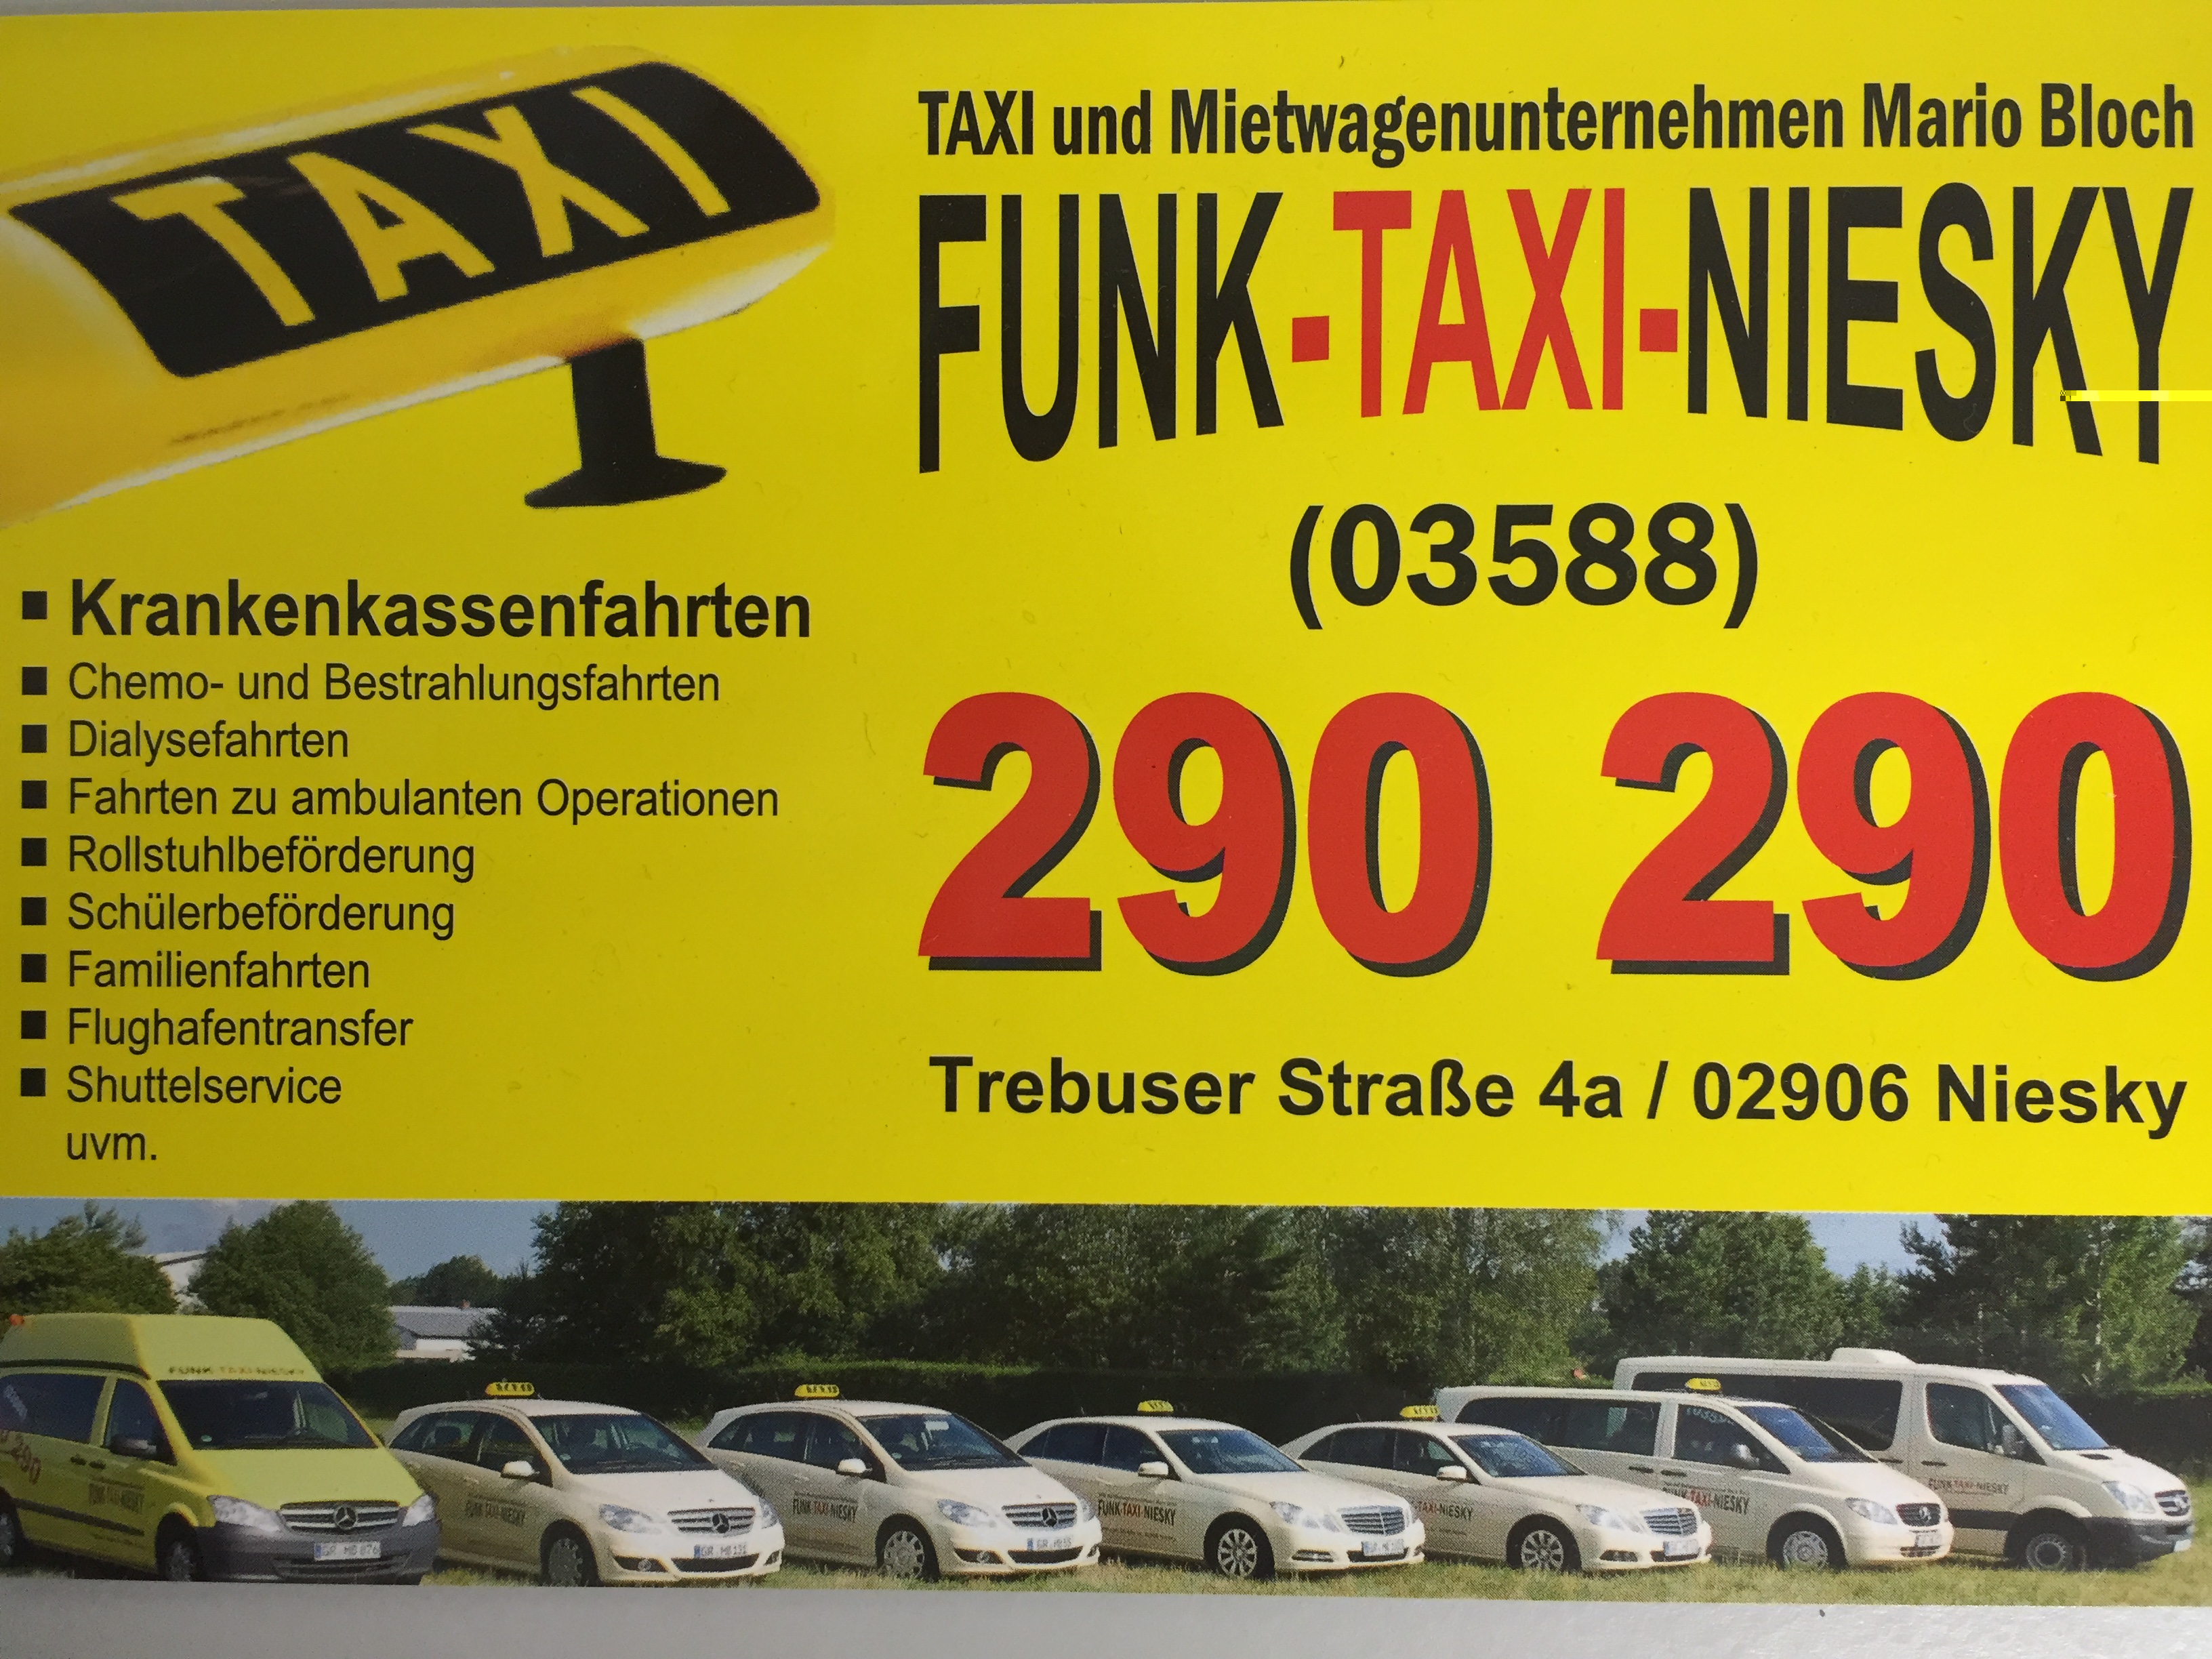 (c) Funk-taxi-niesky.com